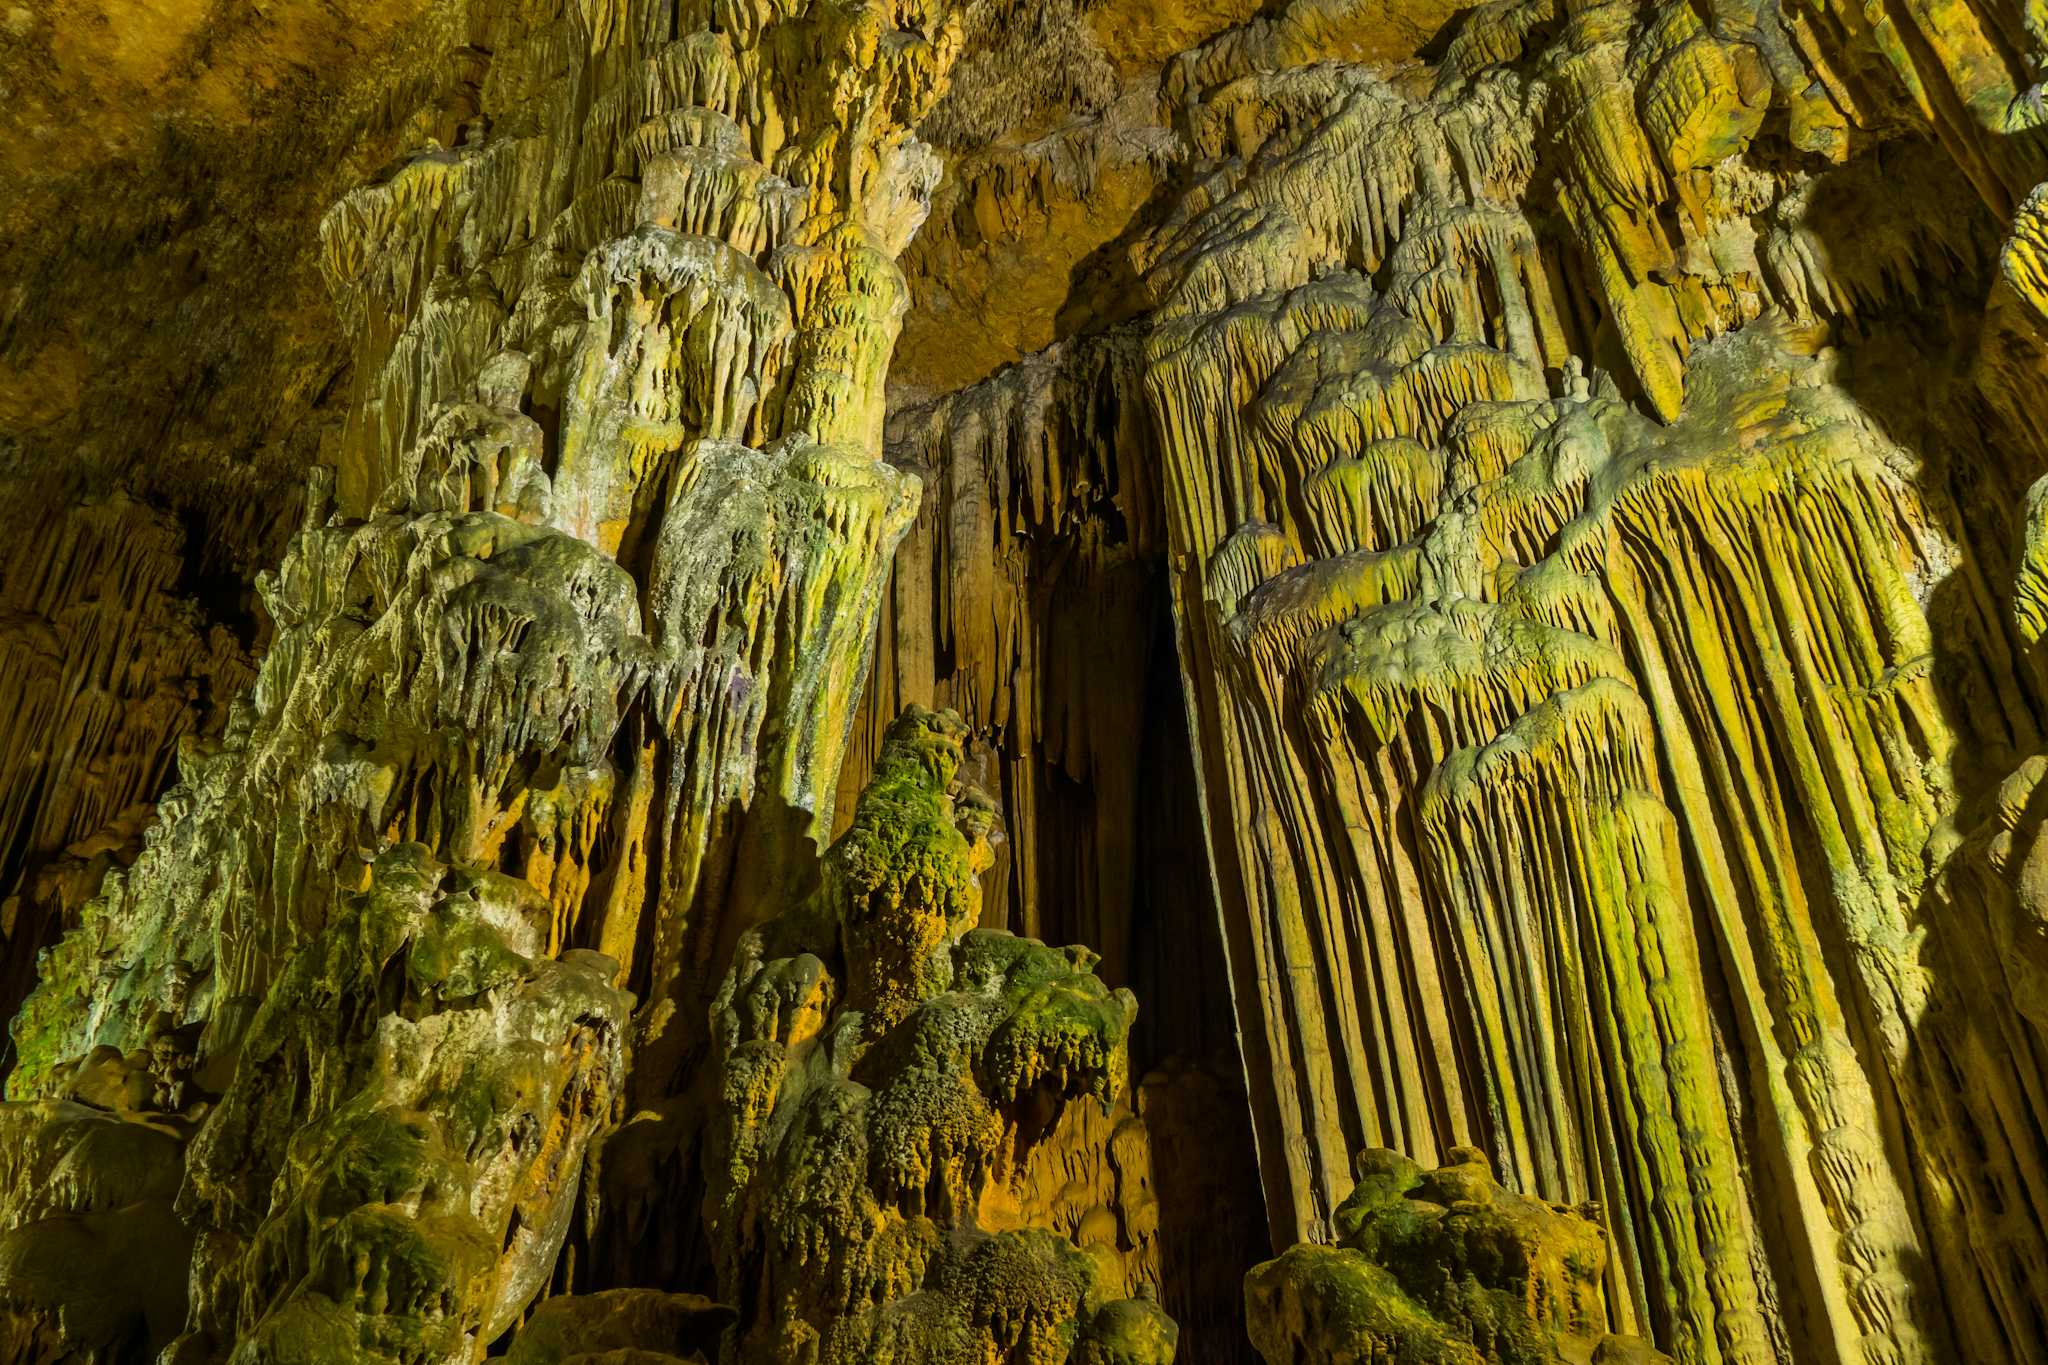 Taskuyu Cave